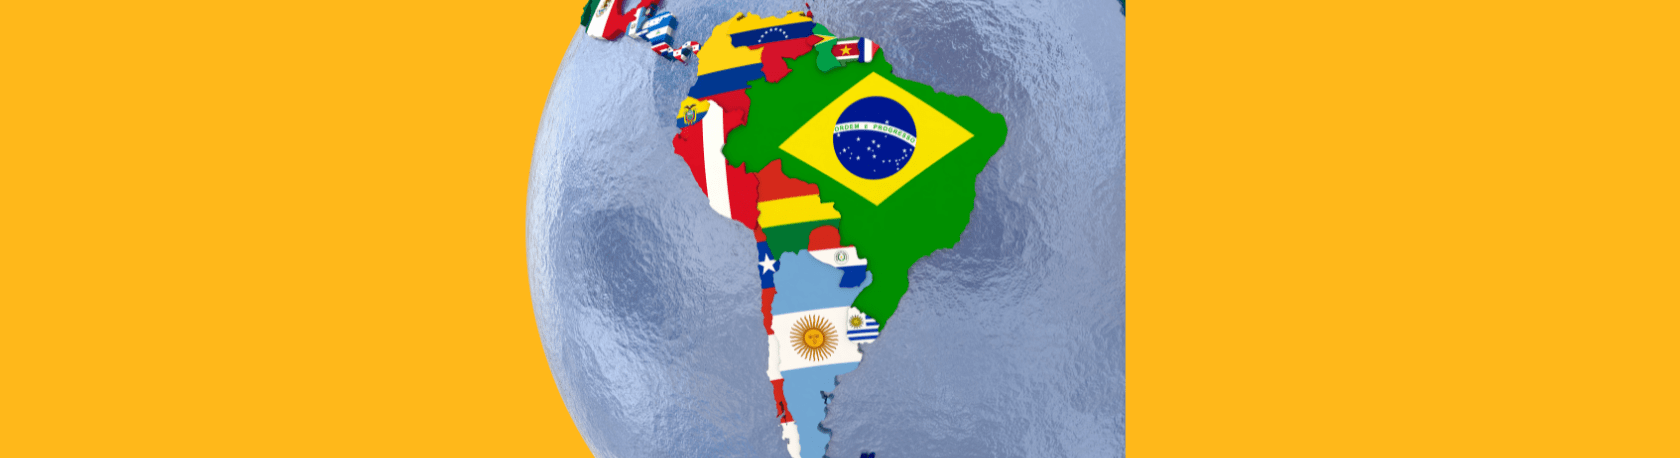 ¿Sabías que 'Iberoamérica', 'Hispanoamérica' y 'Latinoamérica' no son sinónimos? - Easy Español